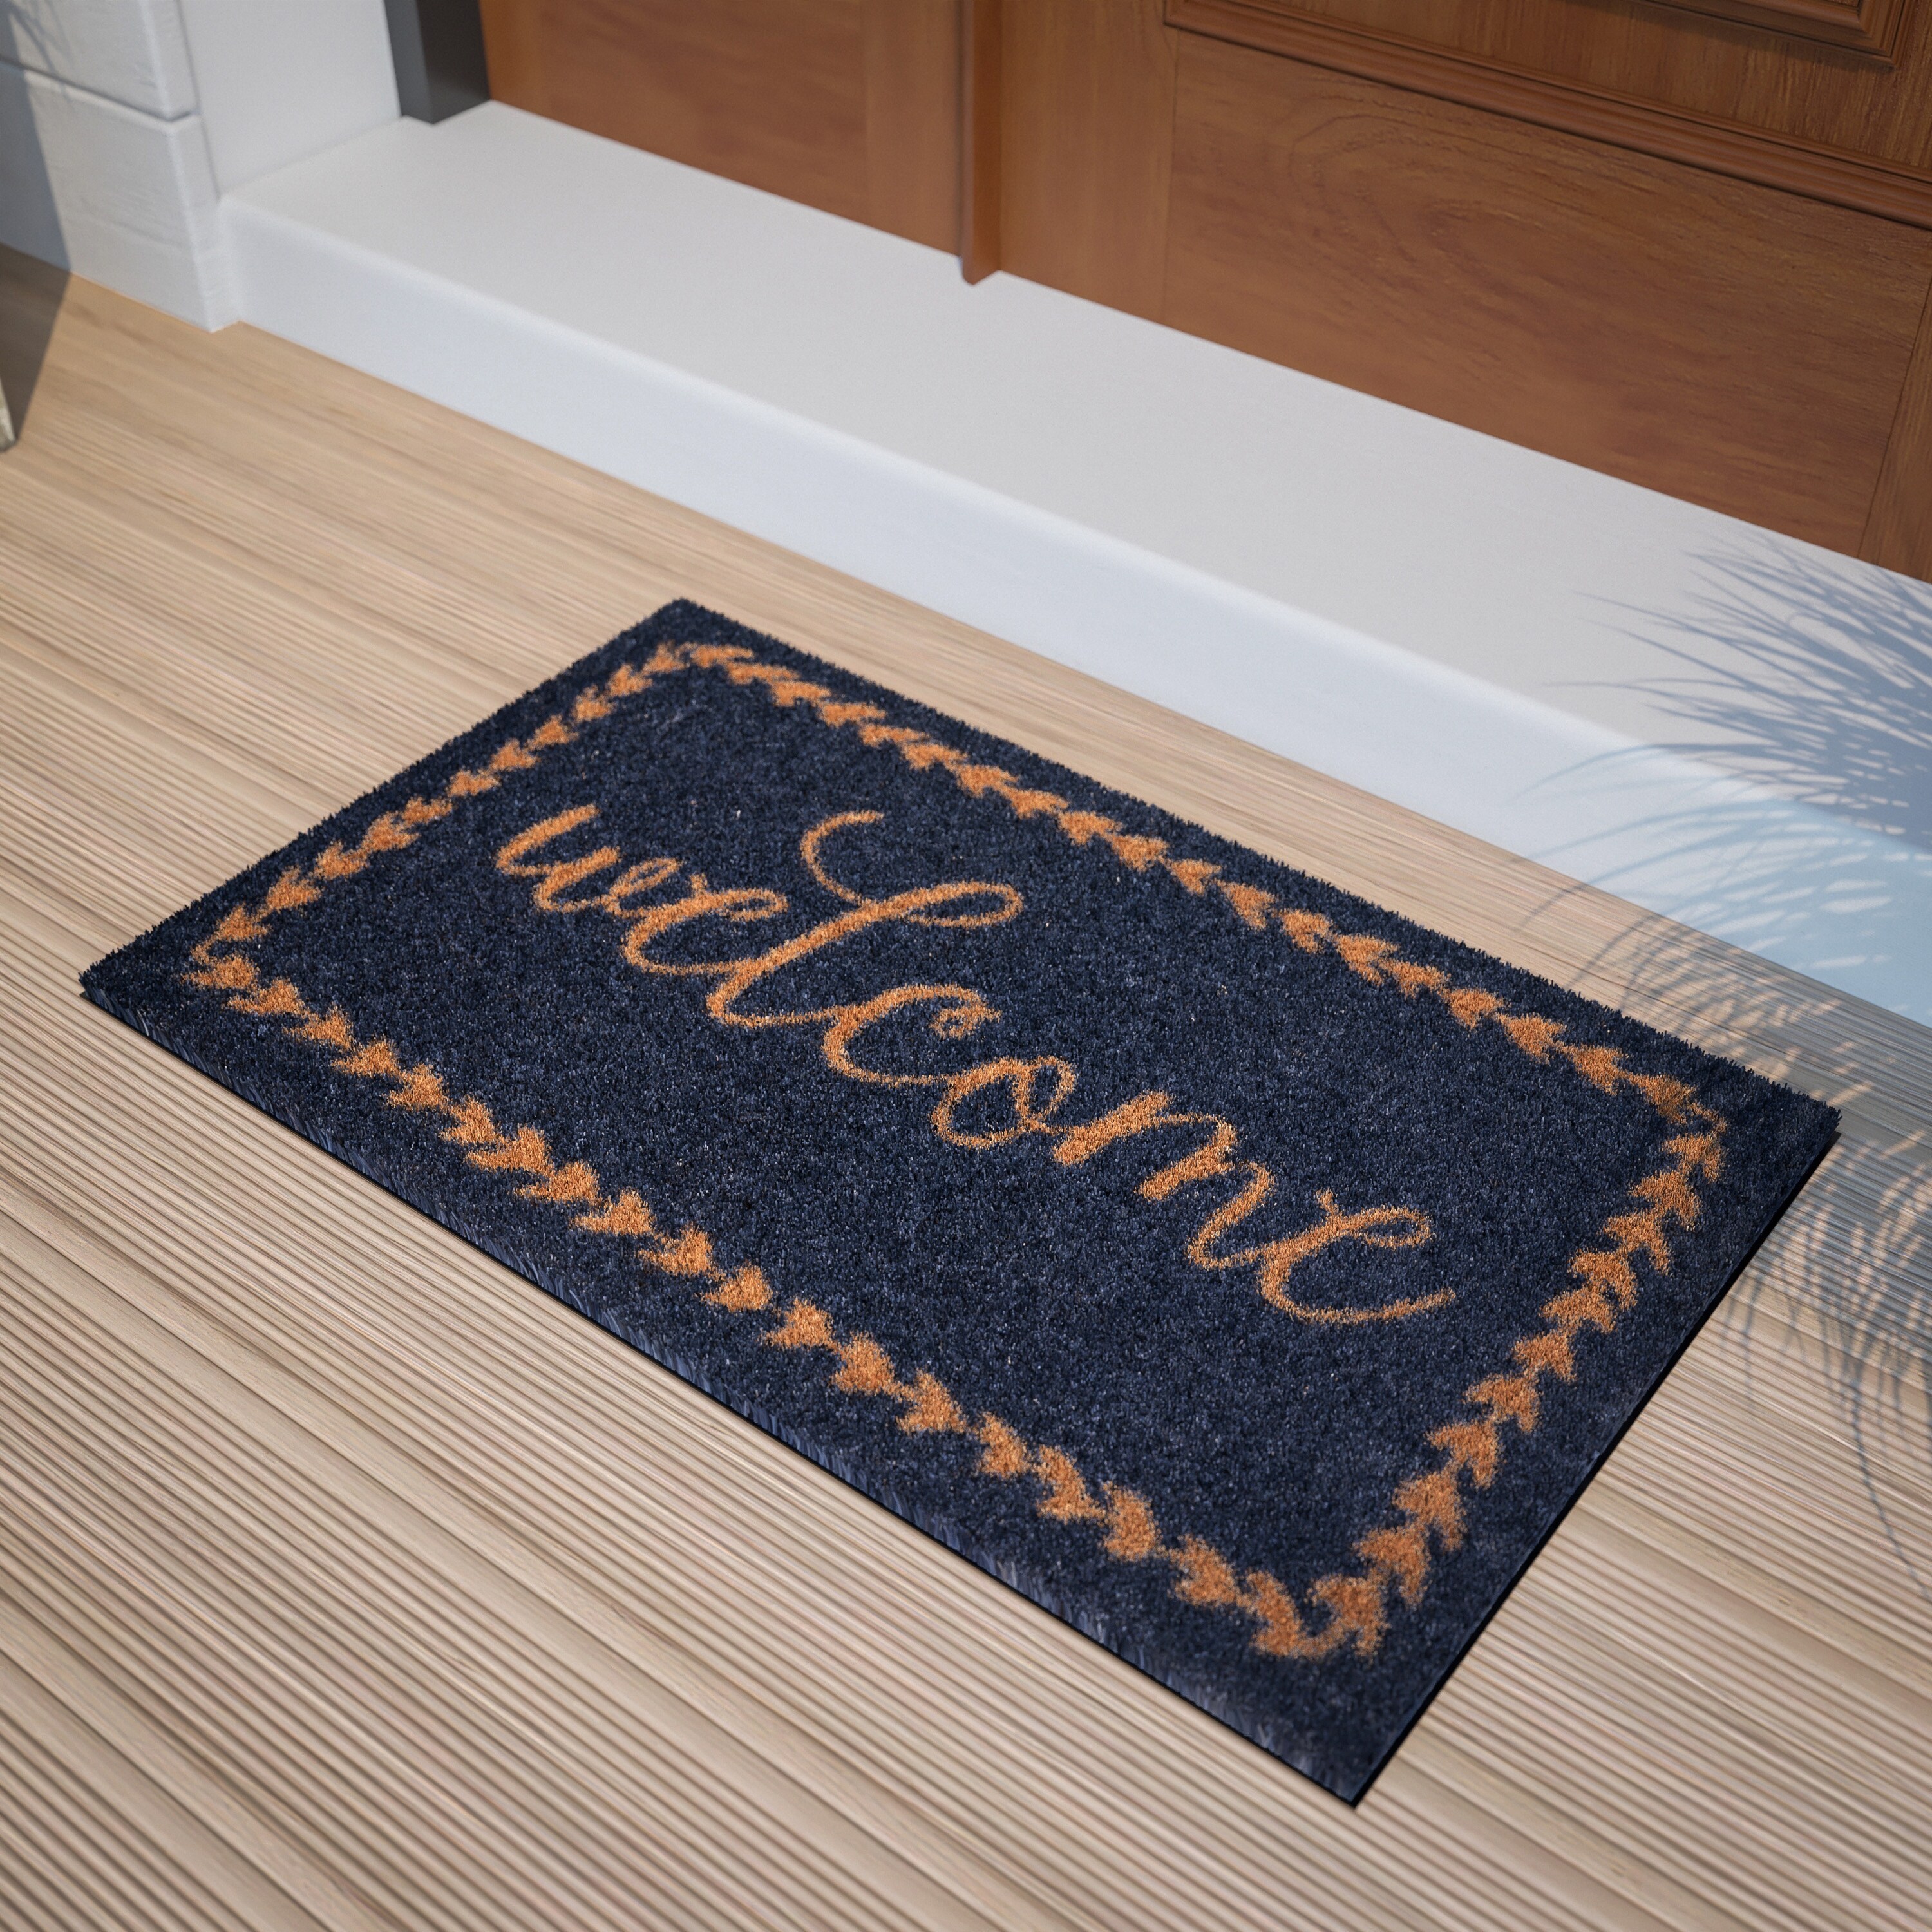 Mascot Hardware Coco Coir Home Entrance Door Mat 28 x 18-in. Home Sweet Home Welcome Mat - Heavy Duty Doormat for Outdoor & Indoor Use Beige